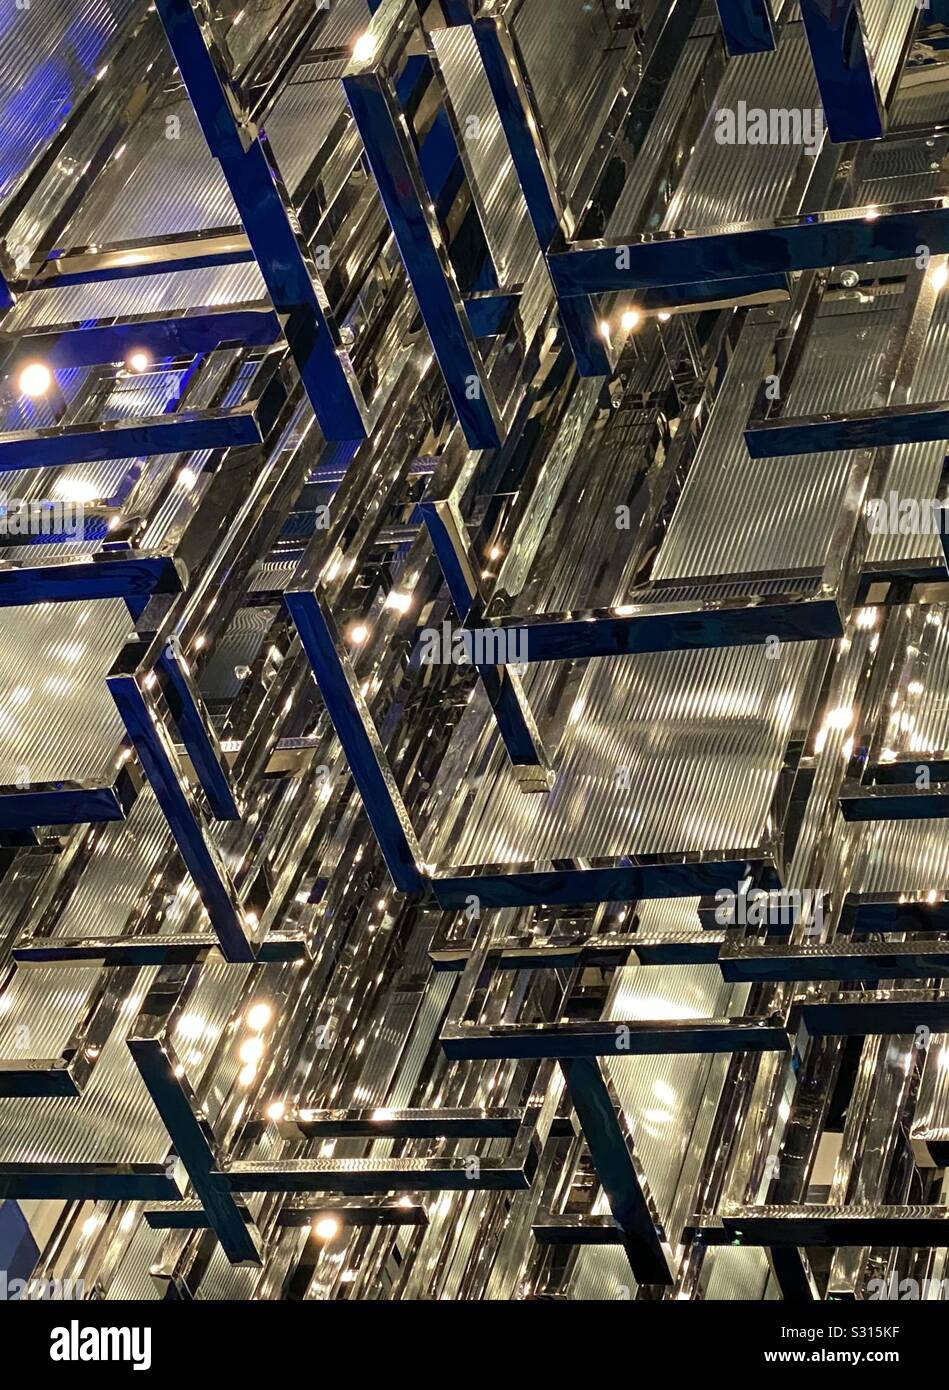 Zusammenfassung der beleuchteten Glas- und Stahlkonstruktion Stockfoto